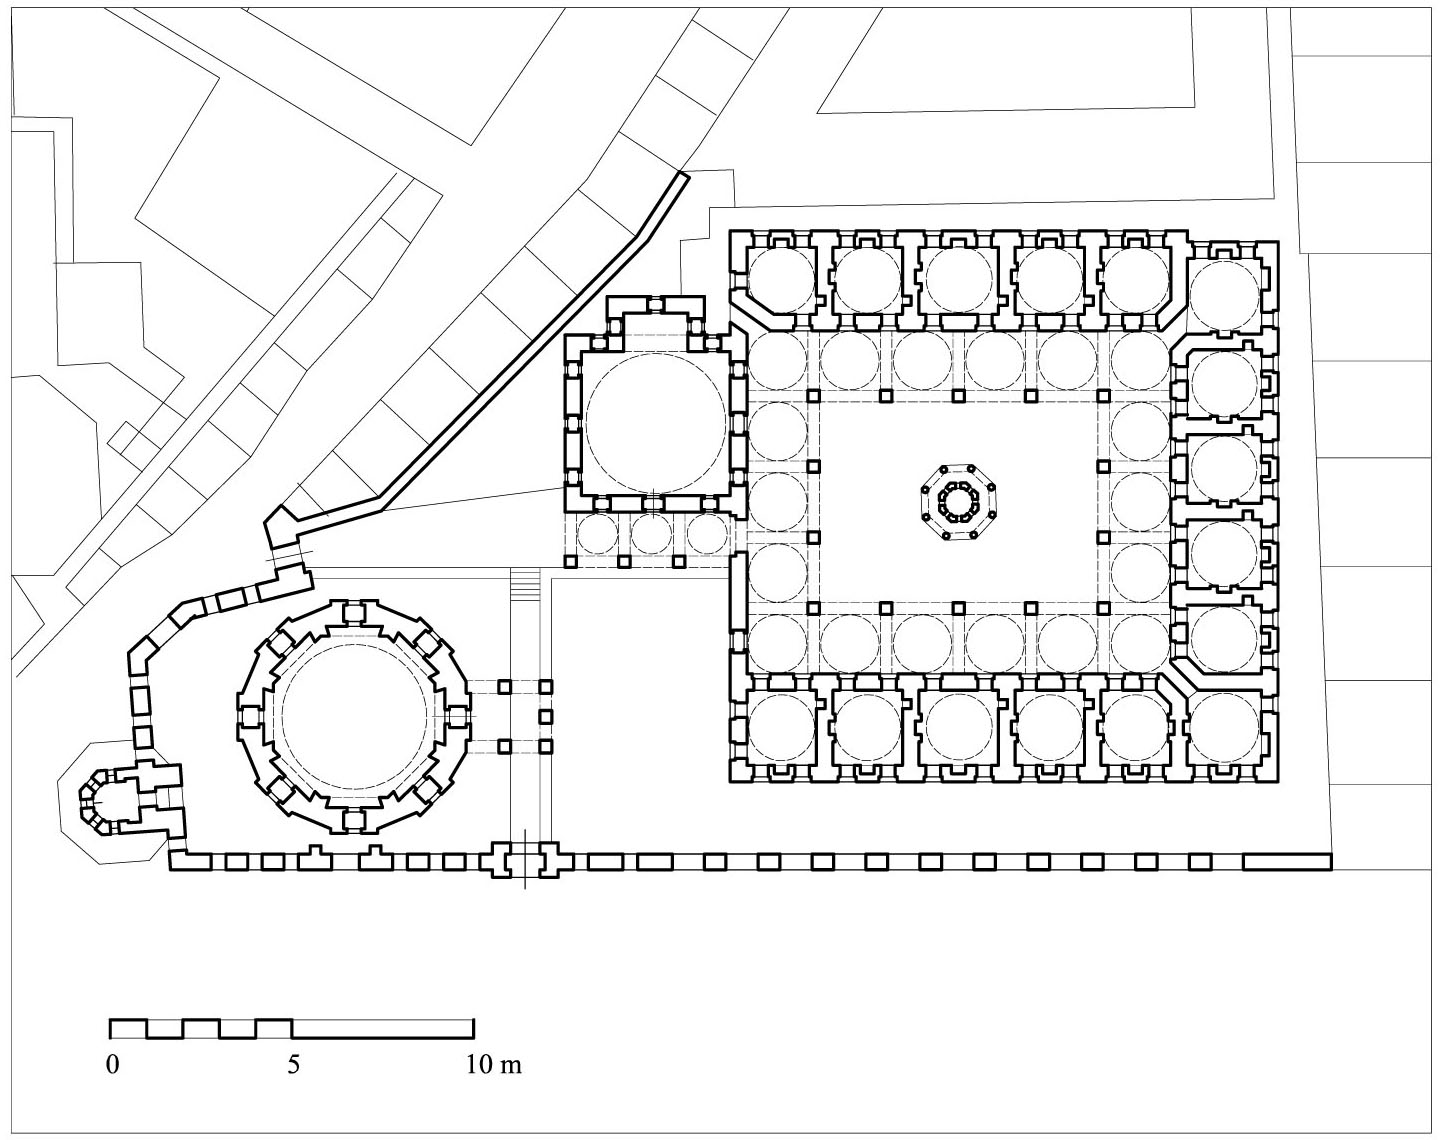 Floor plan of Koca Sinan Pasa Complex